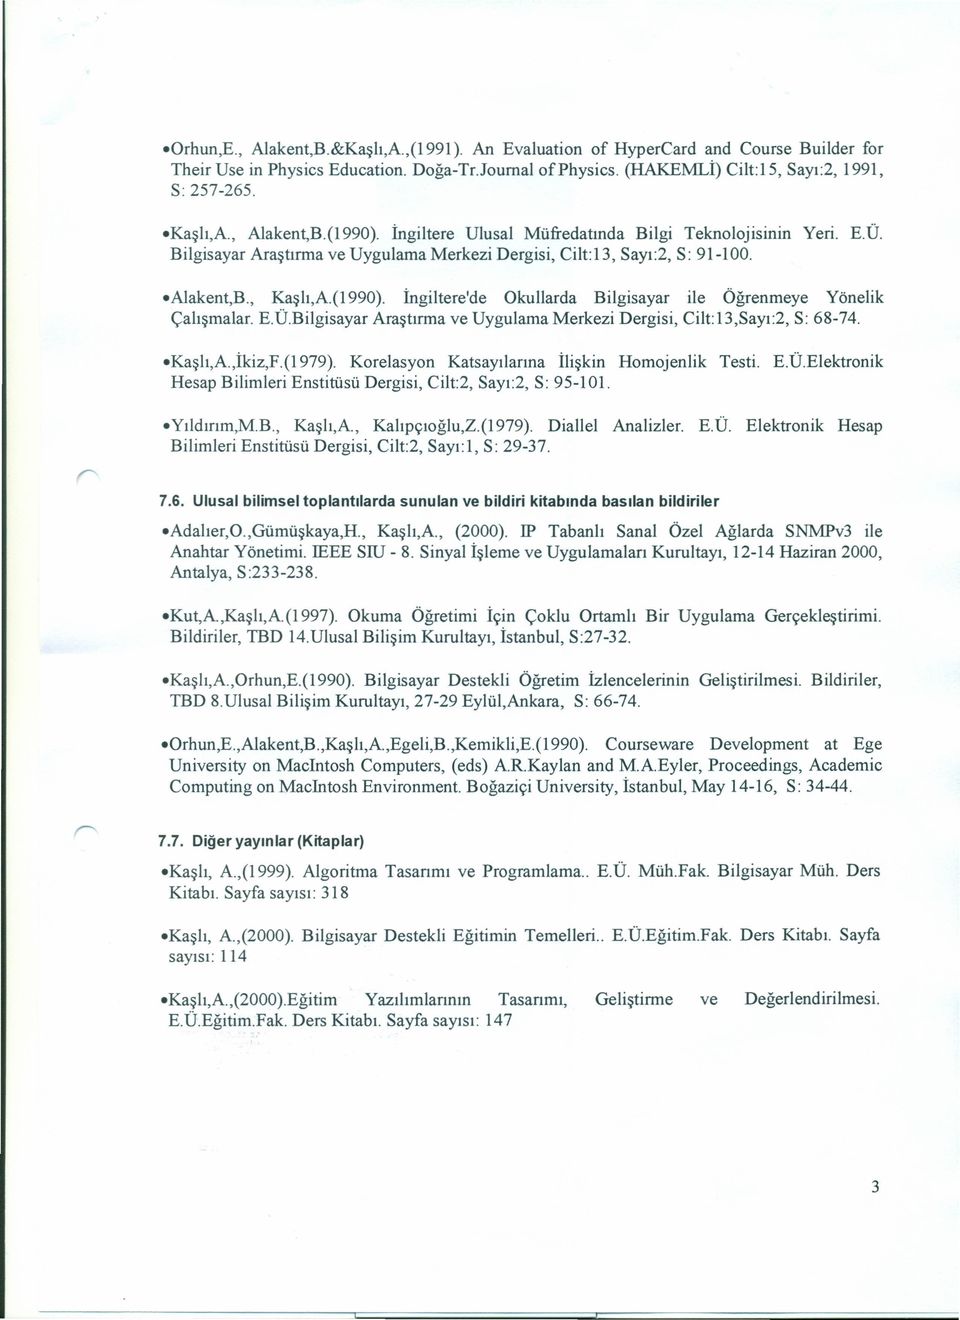 E.Ü.Bilgisayar Araştırma ve Uygulama Merkezi Dergisi, Cilt:13,Sayı:2, S: 68-74. Kaşlı,A.,İkiz,F.(1979). Korelasyon Katsayılarına İlişkin Homojenlik Testi. E.Ü.Elektronik Hesap Bilimleri Enstitüsü Dergisi, Cilt:2, Sayı:2, S: 95-101.